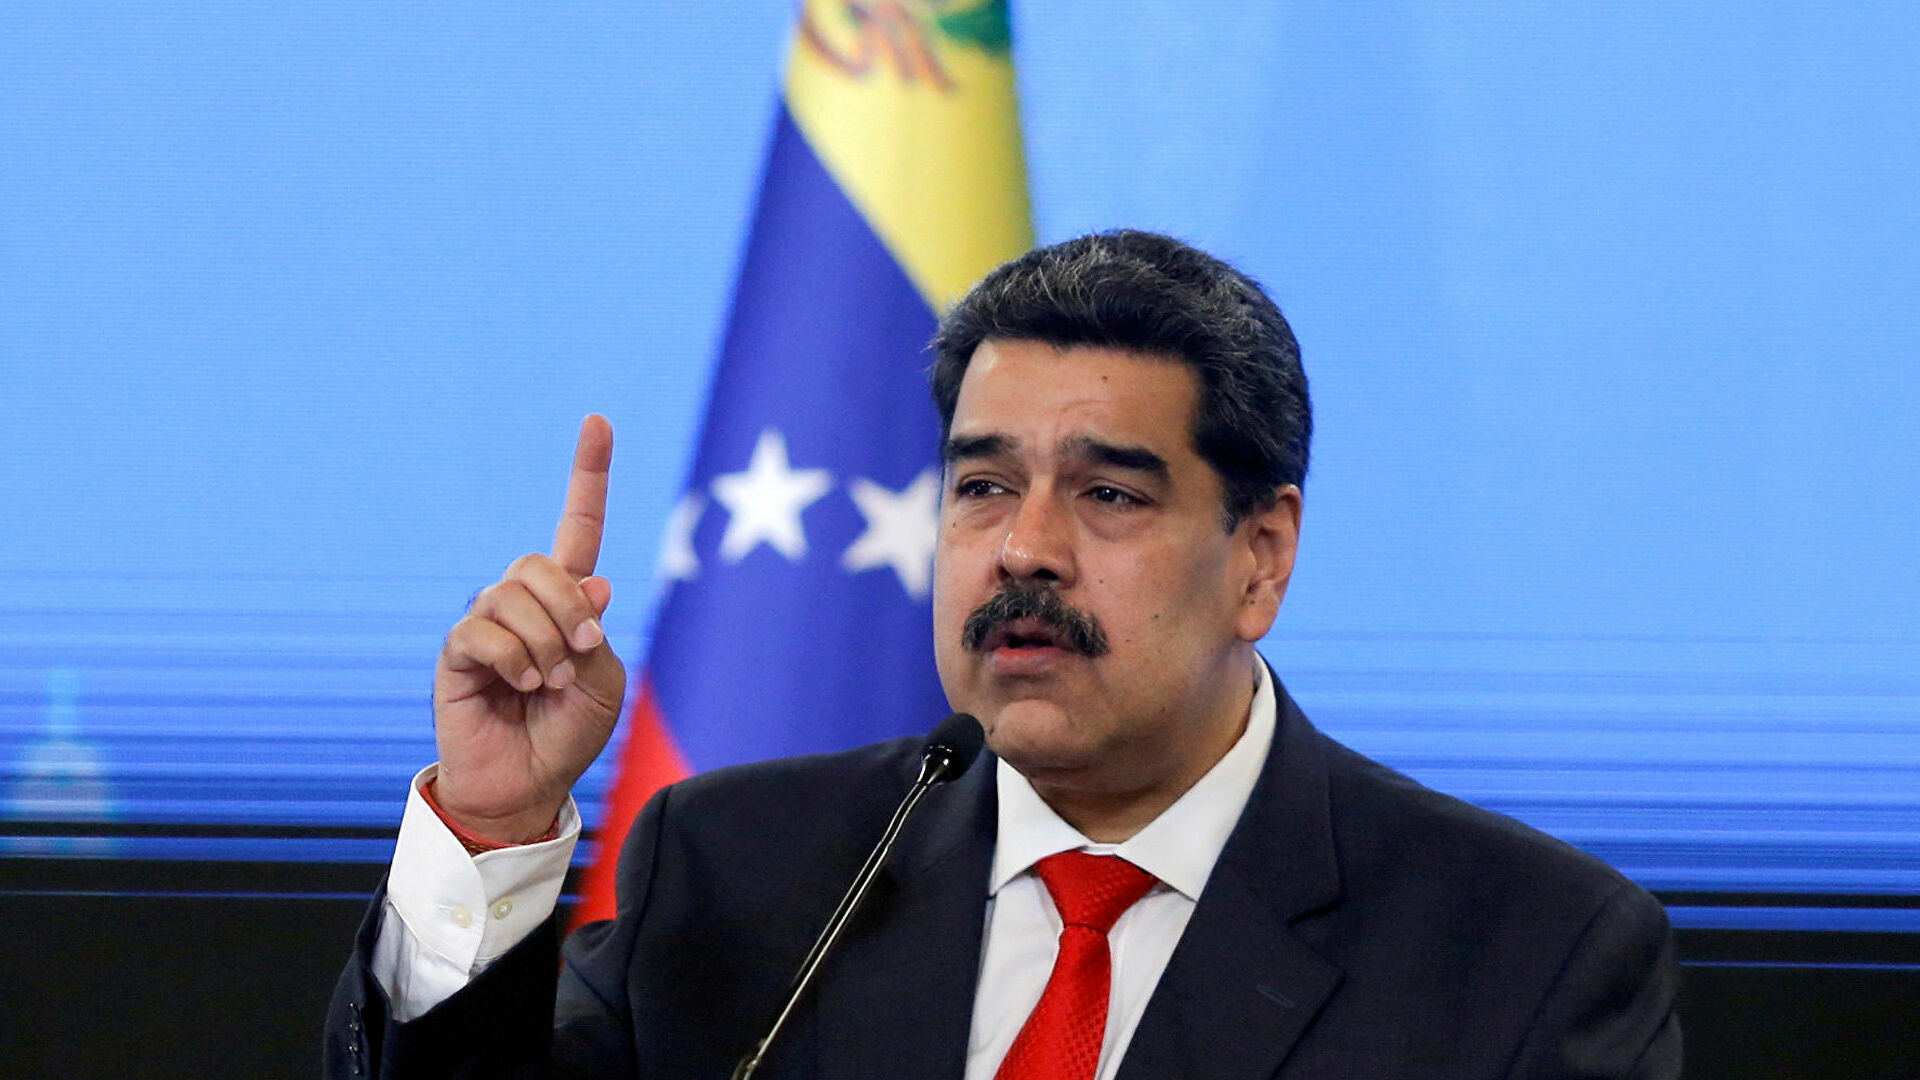 El inevitable camino de Maduro a la Corte Penal Internacional